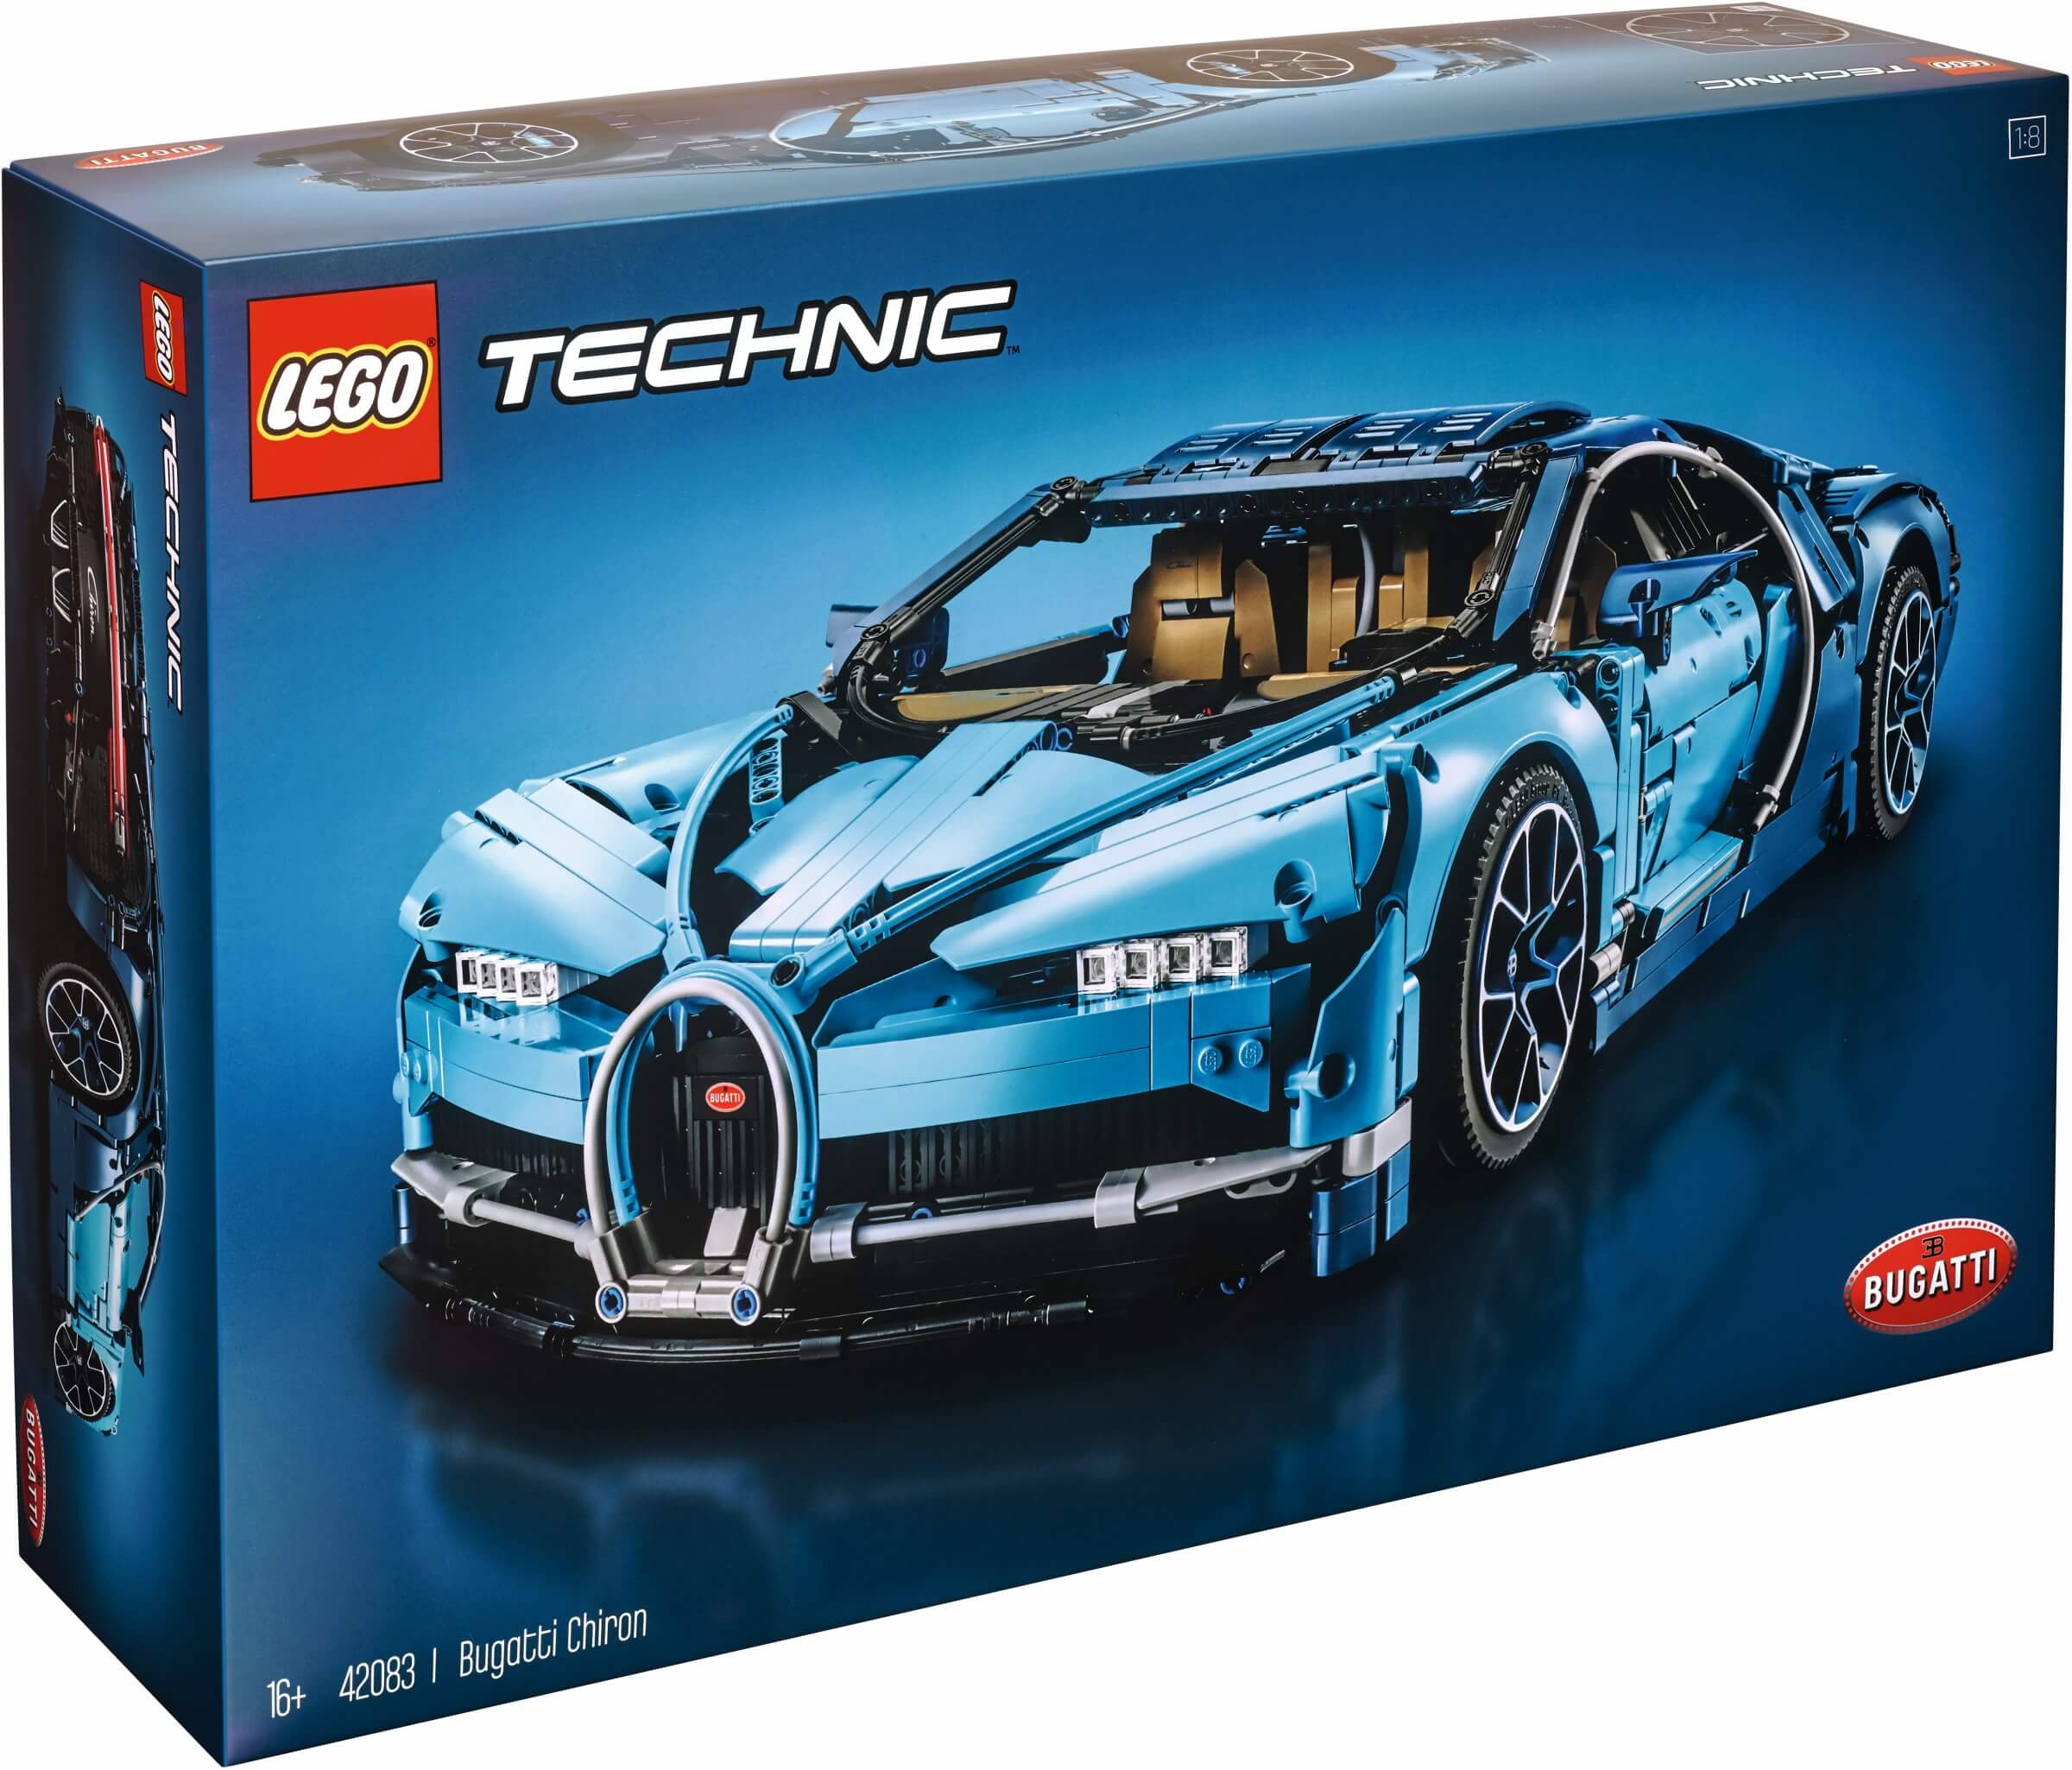 Đồ chơi lắp ráp LEGO Technic 42083  Siêu Xe Bugatti Chiron  3599 mảnh  ghép LEGO Technic 42083 Bugatti Chiron giá rẻ tại cửa hàng LegoHousevn  LEGO Việt Nam